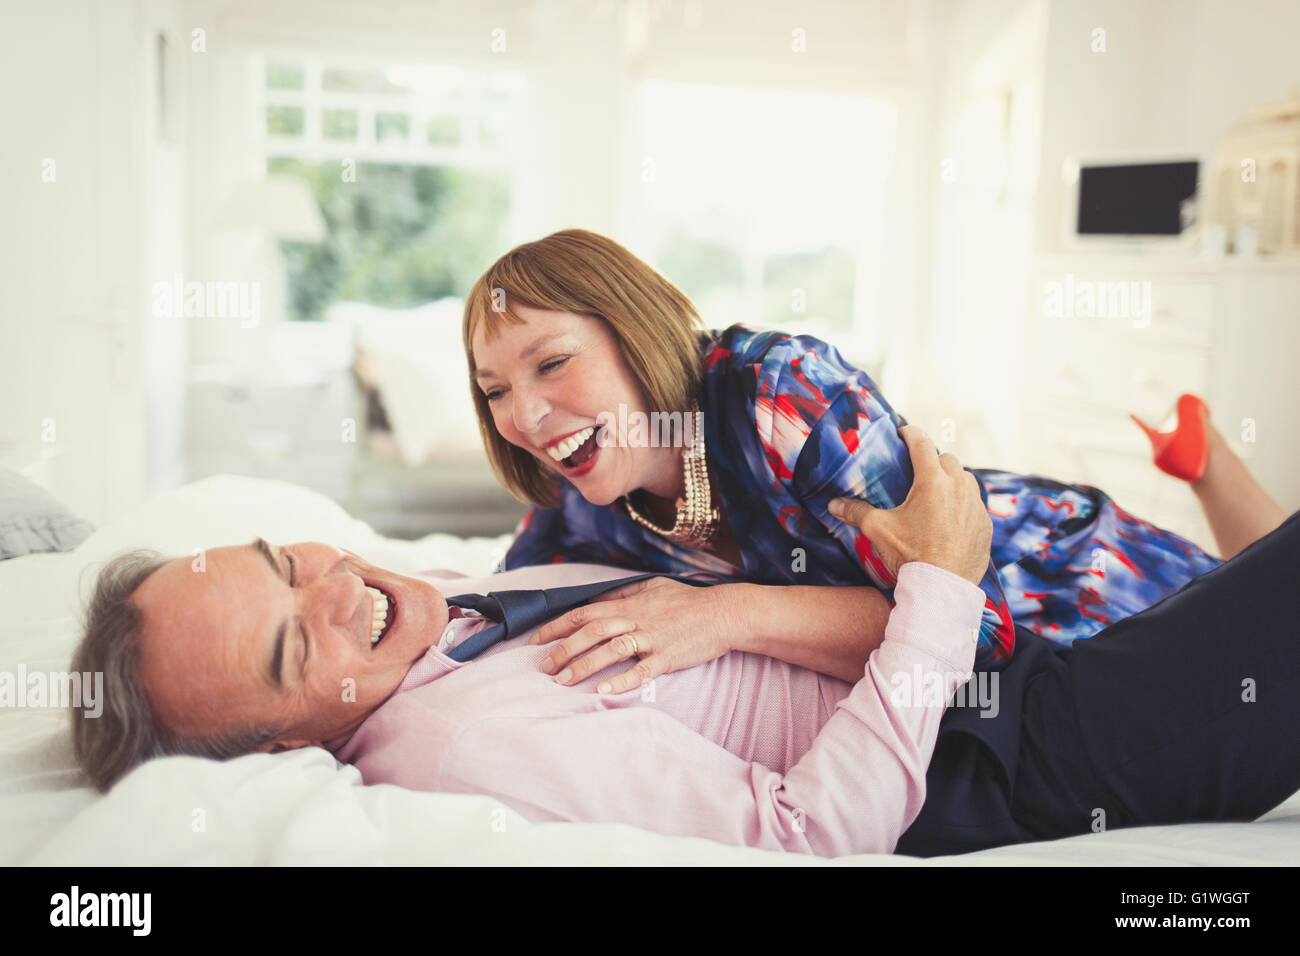 Bien-habillé mature couple laughing on bed Banque D'Images